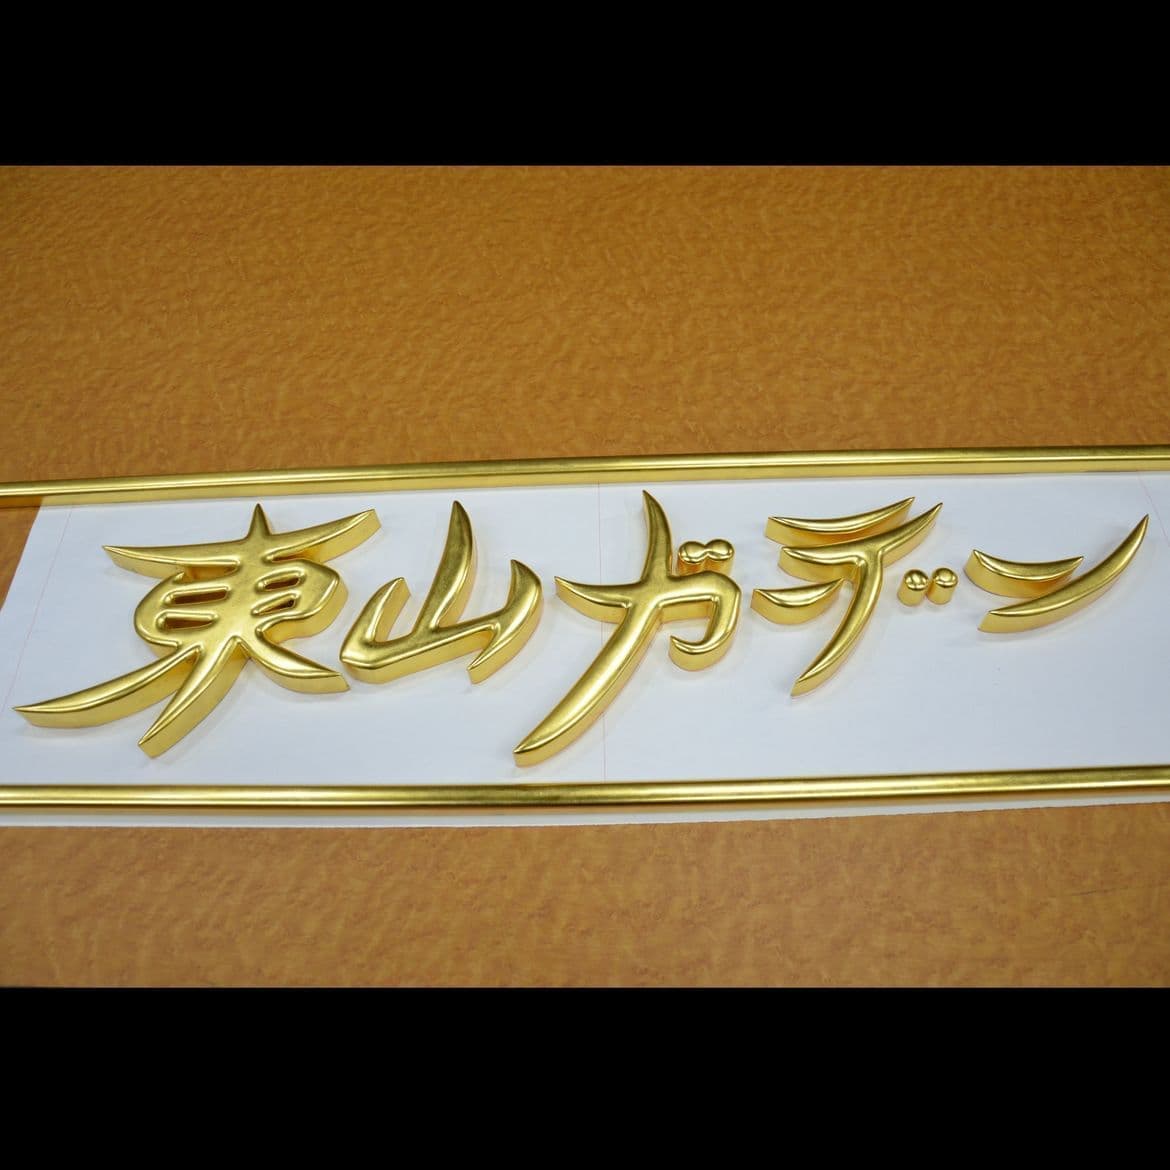 木製の切り抜き文字で金箔が前面に貼ってある看板